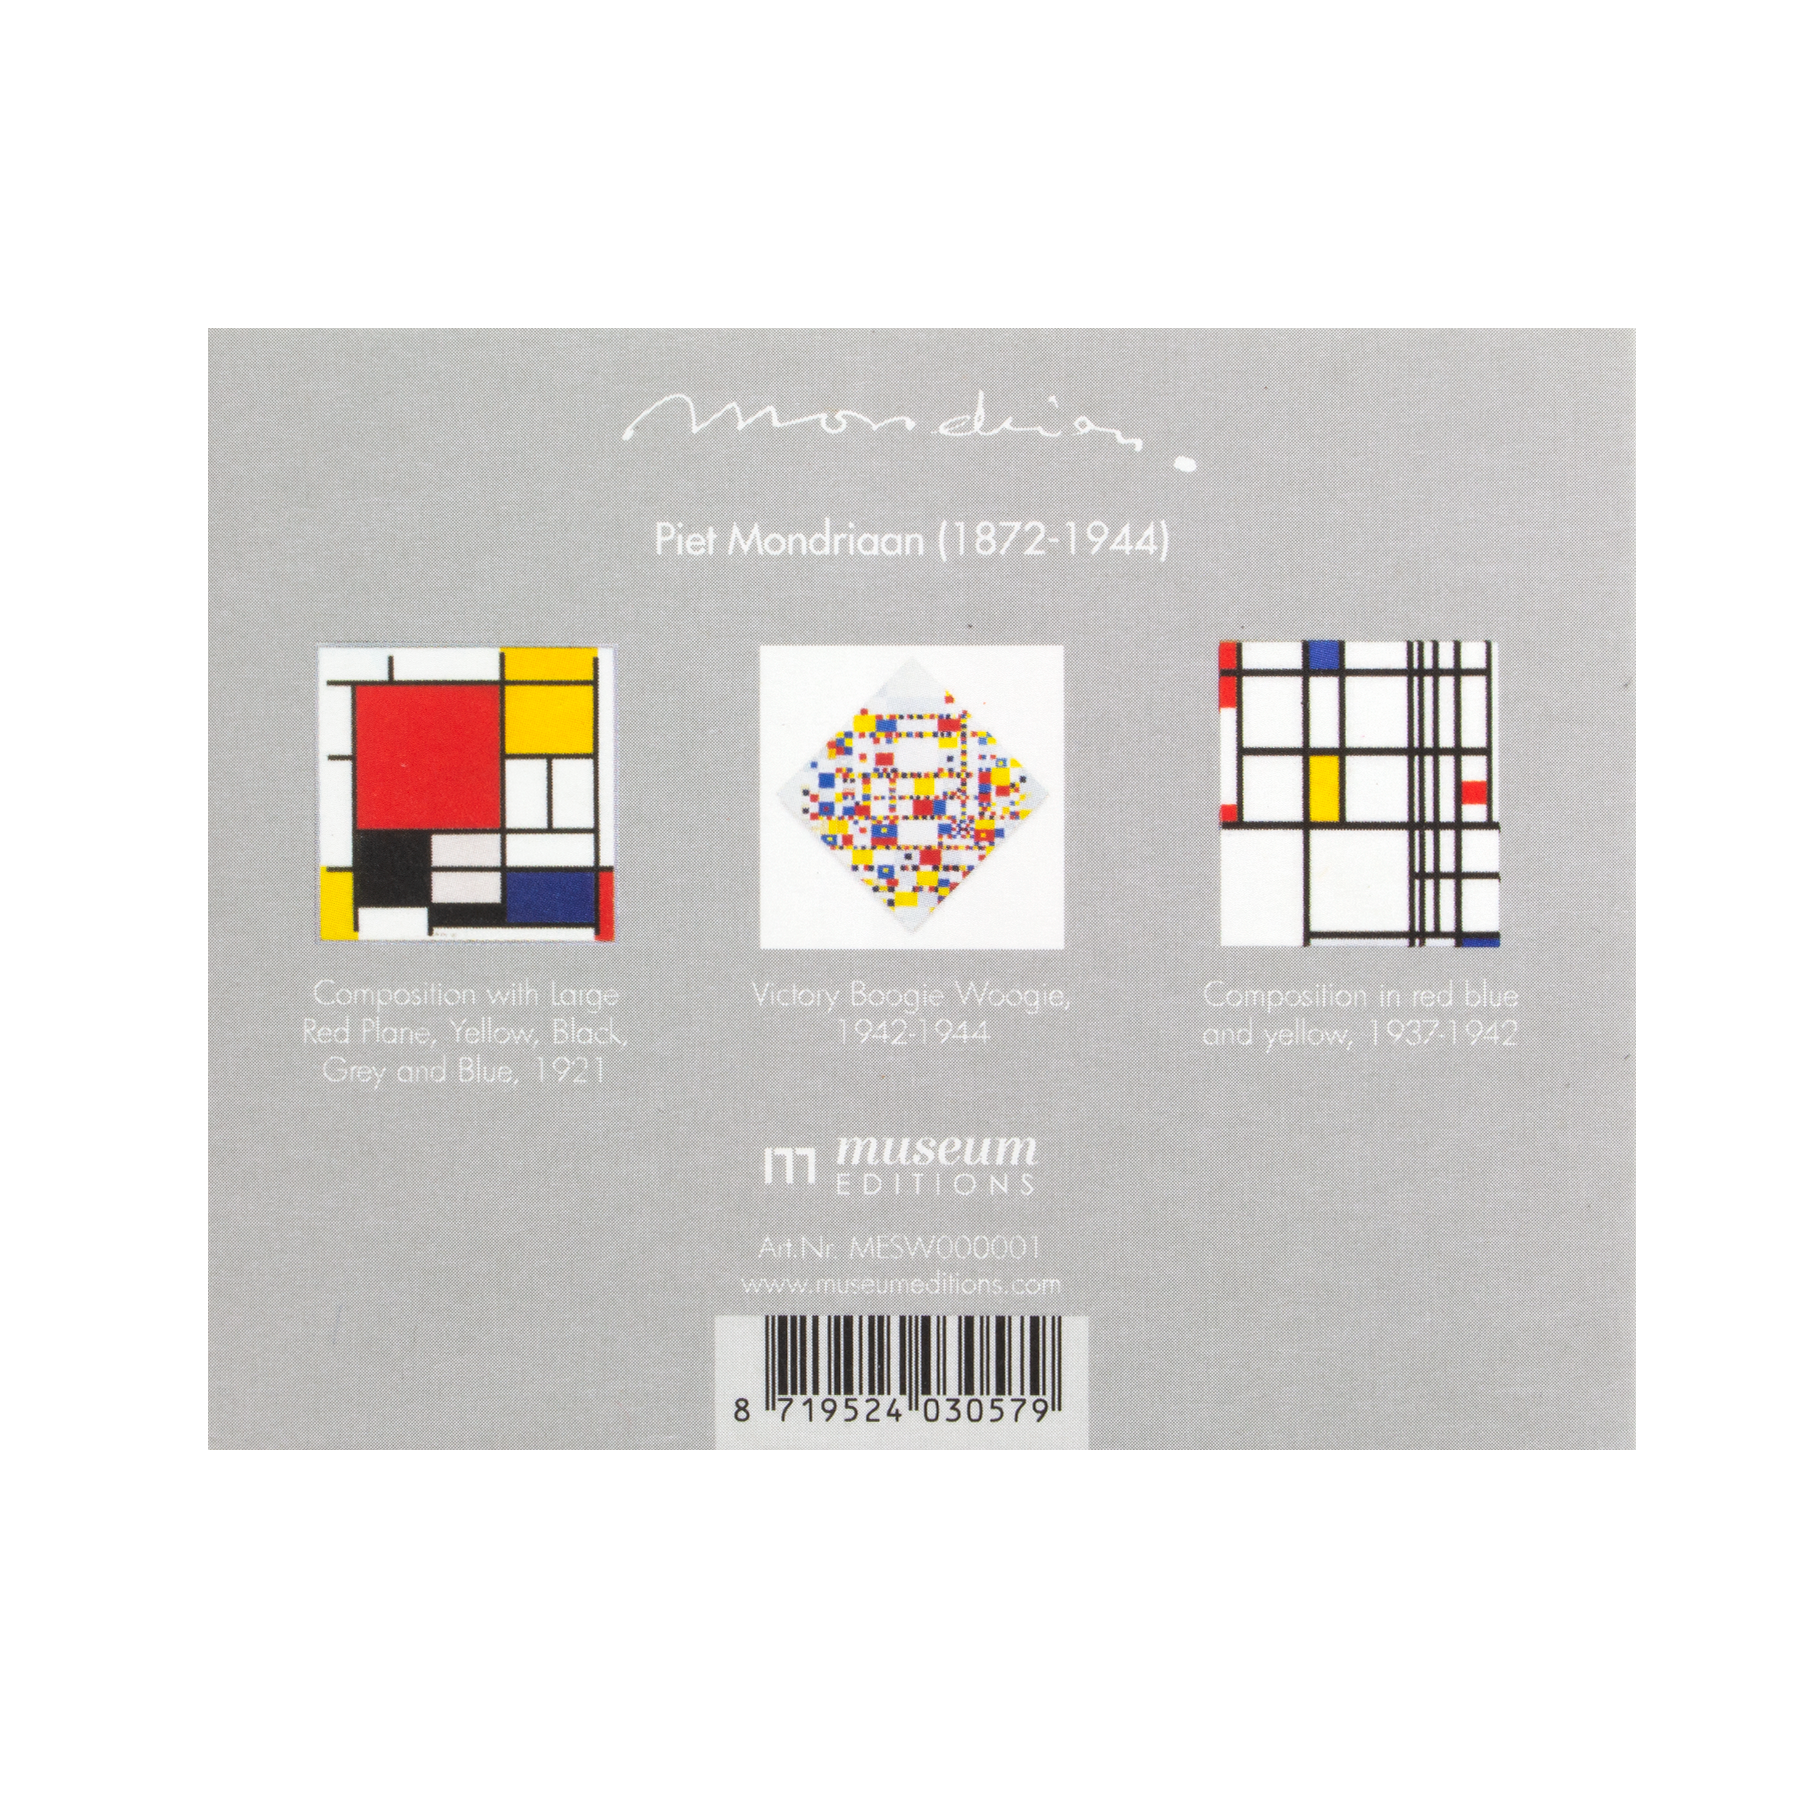 Magnets pour réfrigérateur, lot de 3, Mondrian